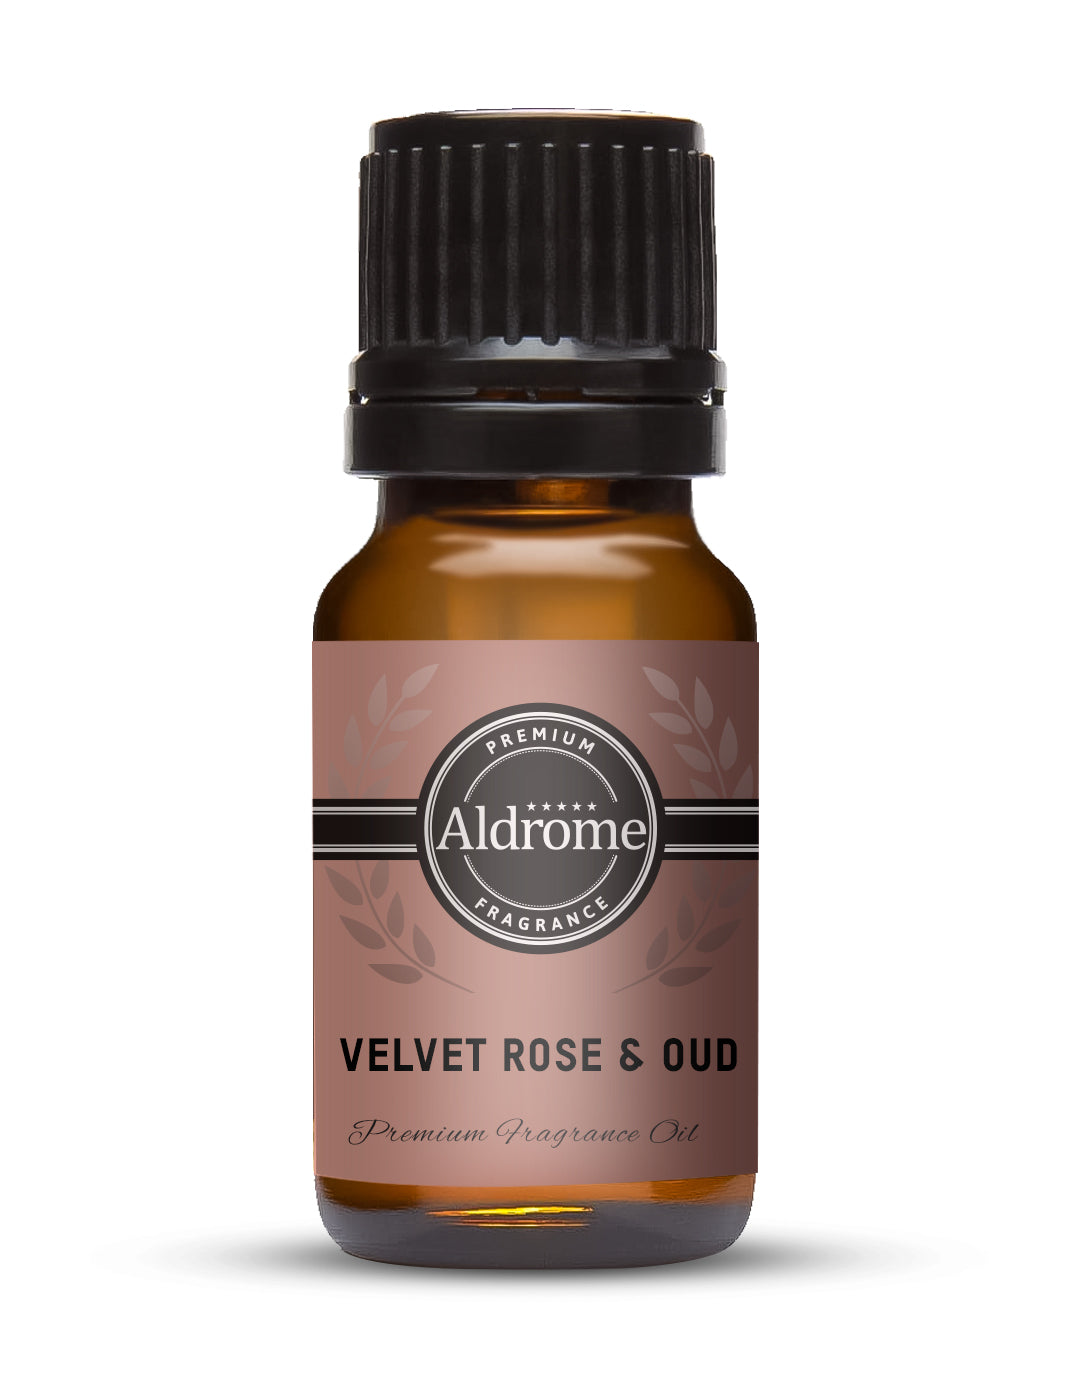 Buy Velvet Rose & Oud Fragrance Oil - 10ml at Best price | Aldrome Premium Fragrance Oil